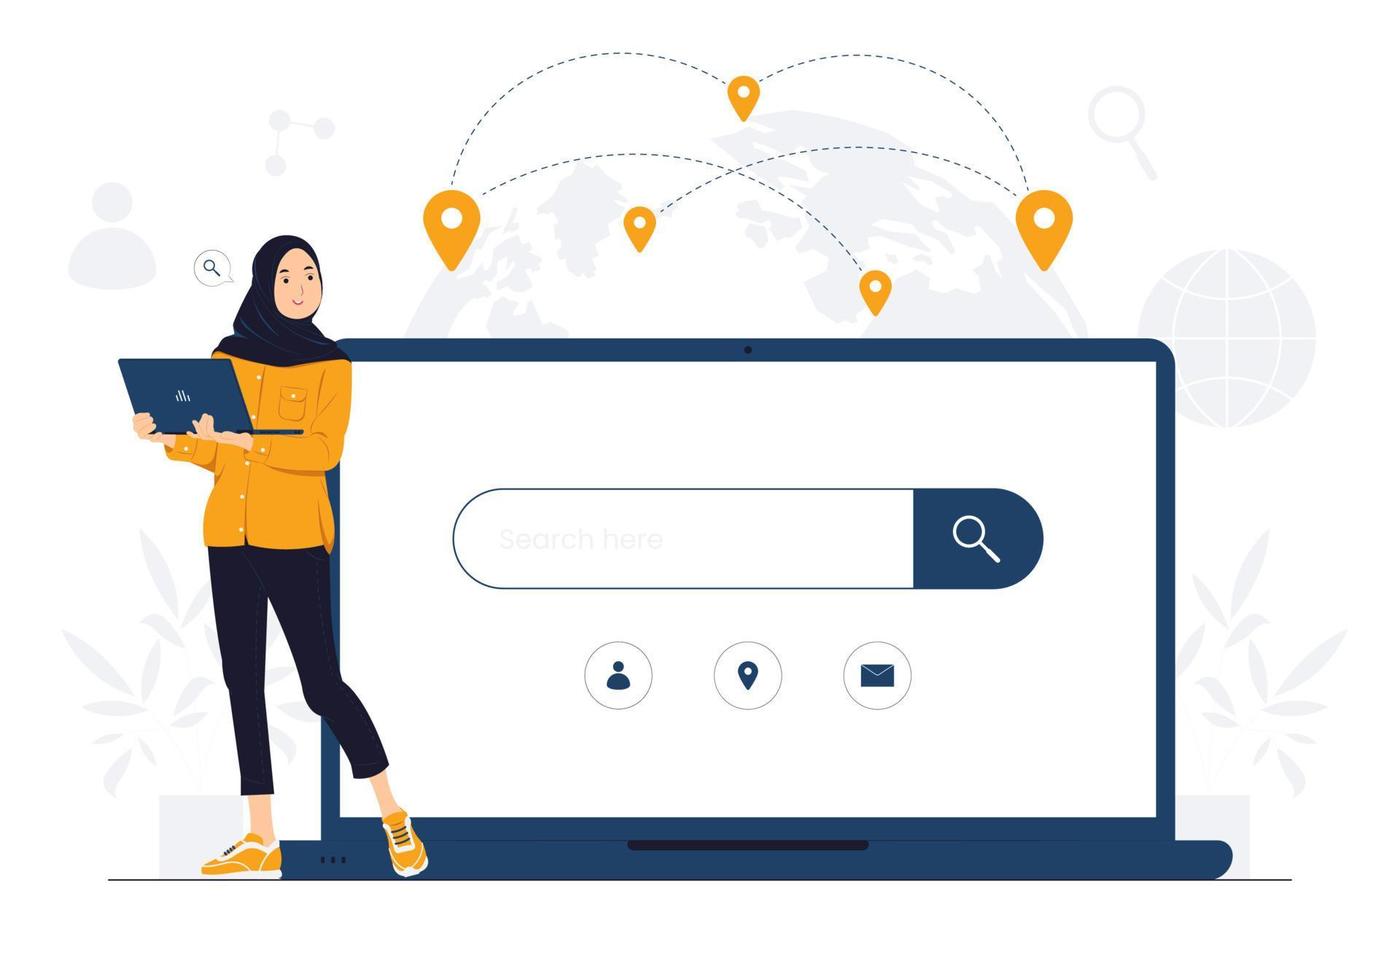 mulher muçulmana segurando laptop e apontando para o navegador da web online, barras de mecanismo de pesquisa, otimização de seo, ilustração de conceito vetor